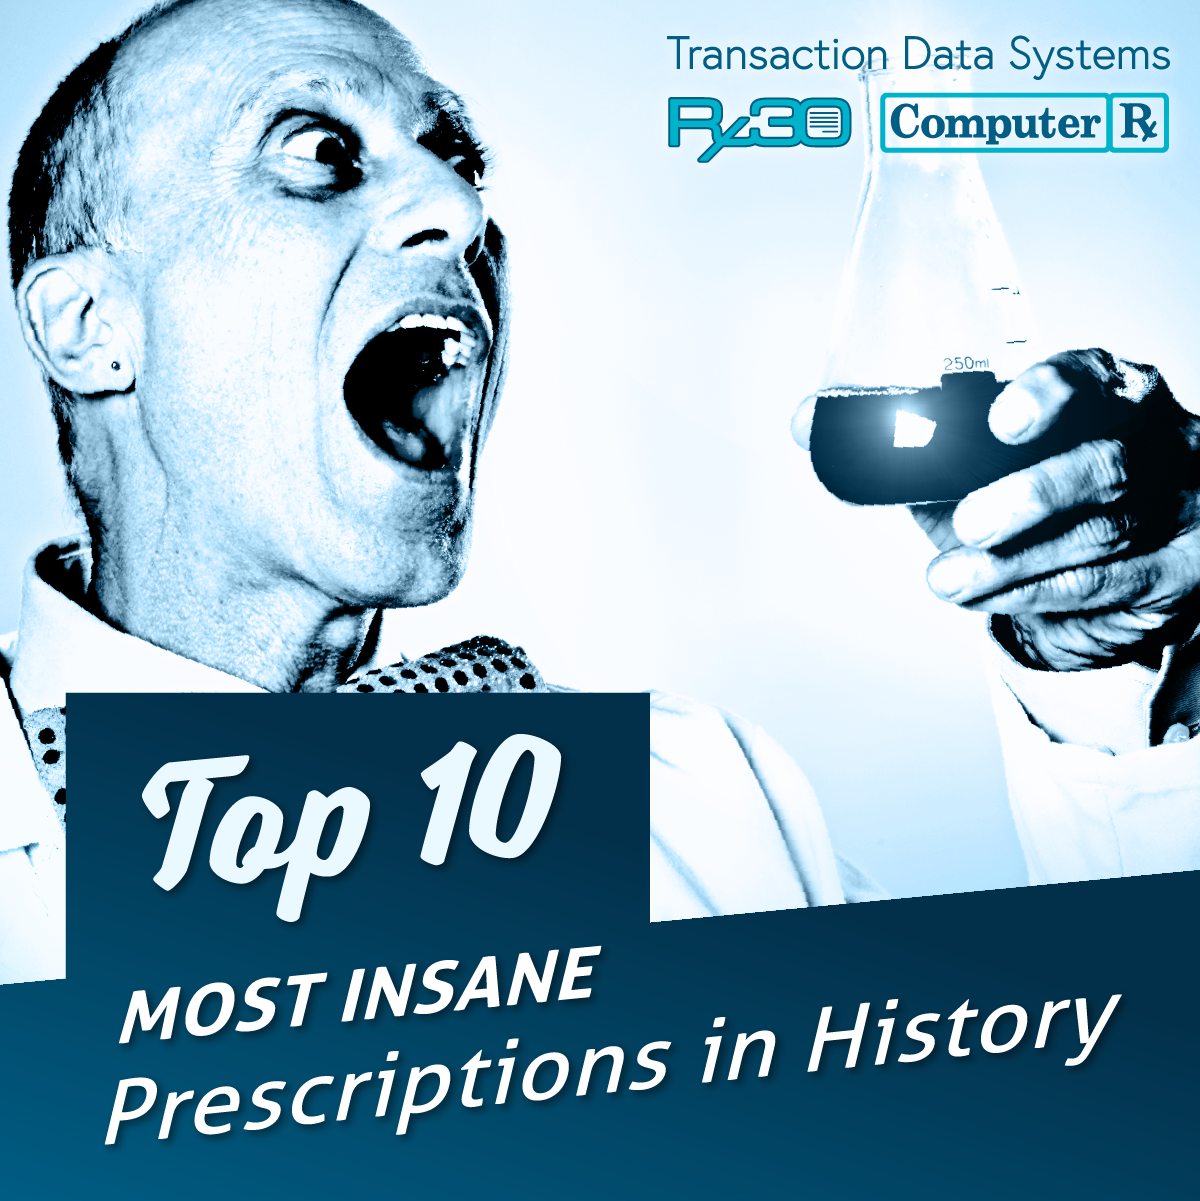 Top 10 Most Insane Prescriptions in History